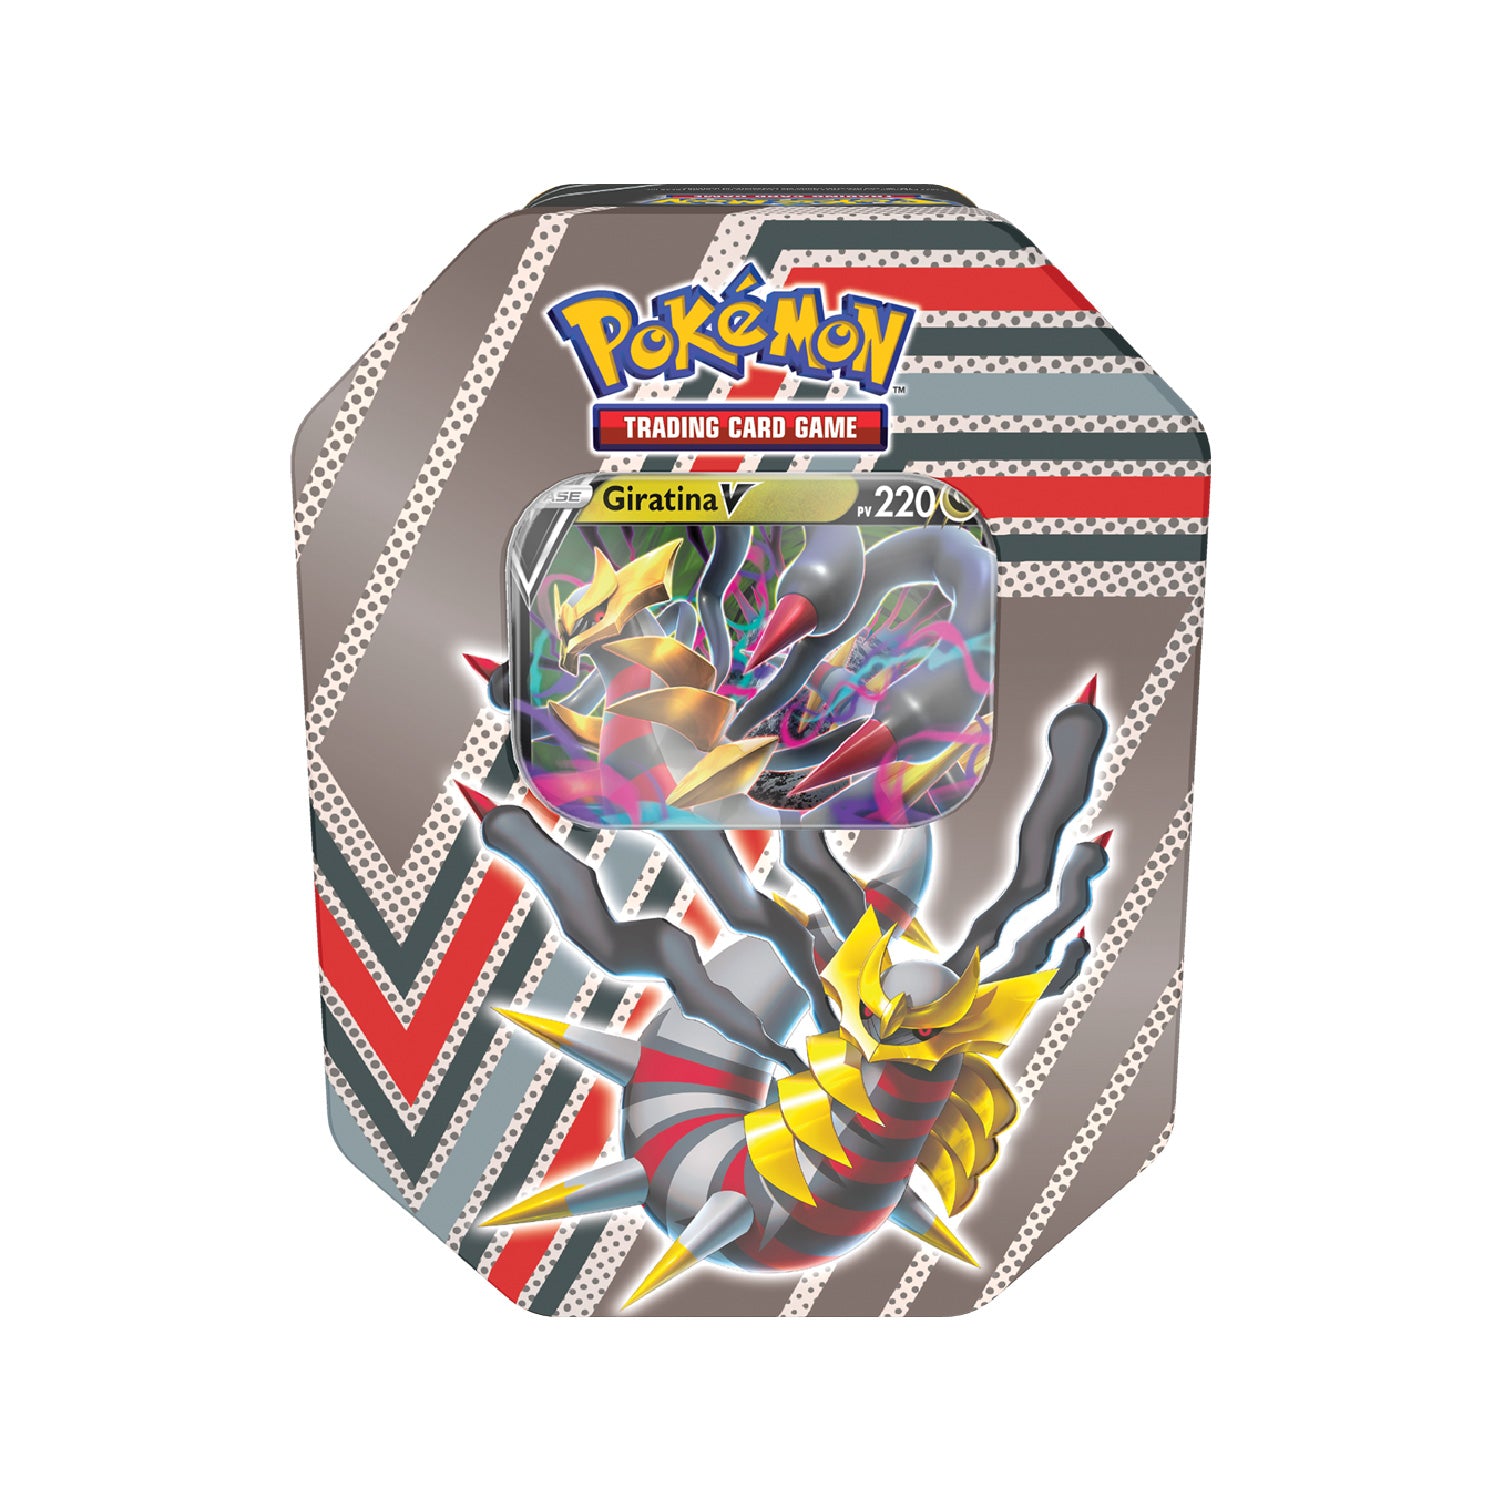 Pokébox Tin Potentiel Caché Pokémon Giratina-V 🇫🇷 – POKEMAGIC